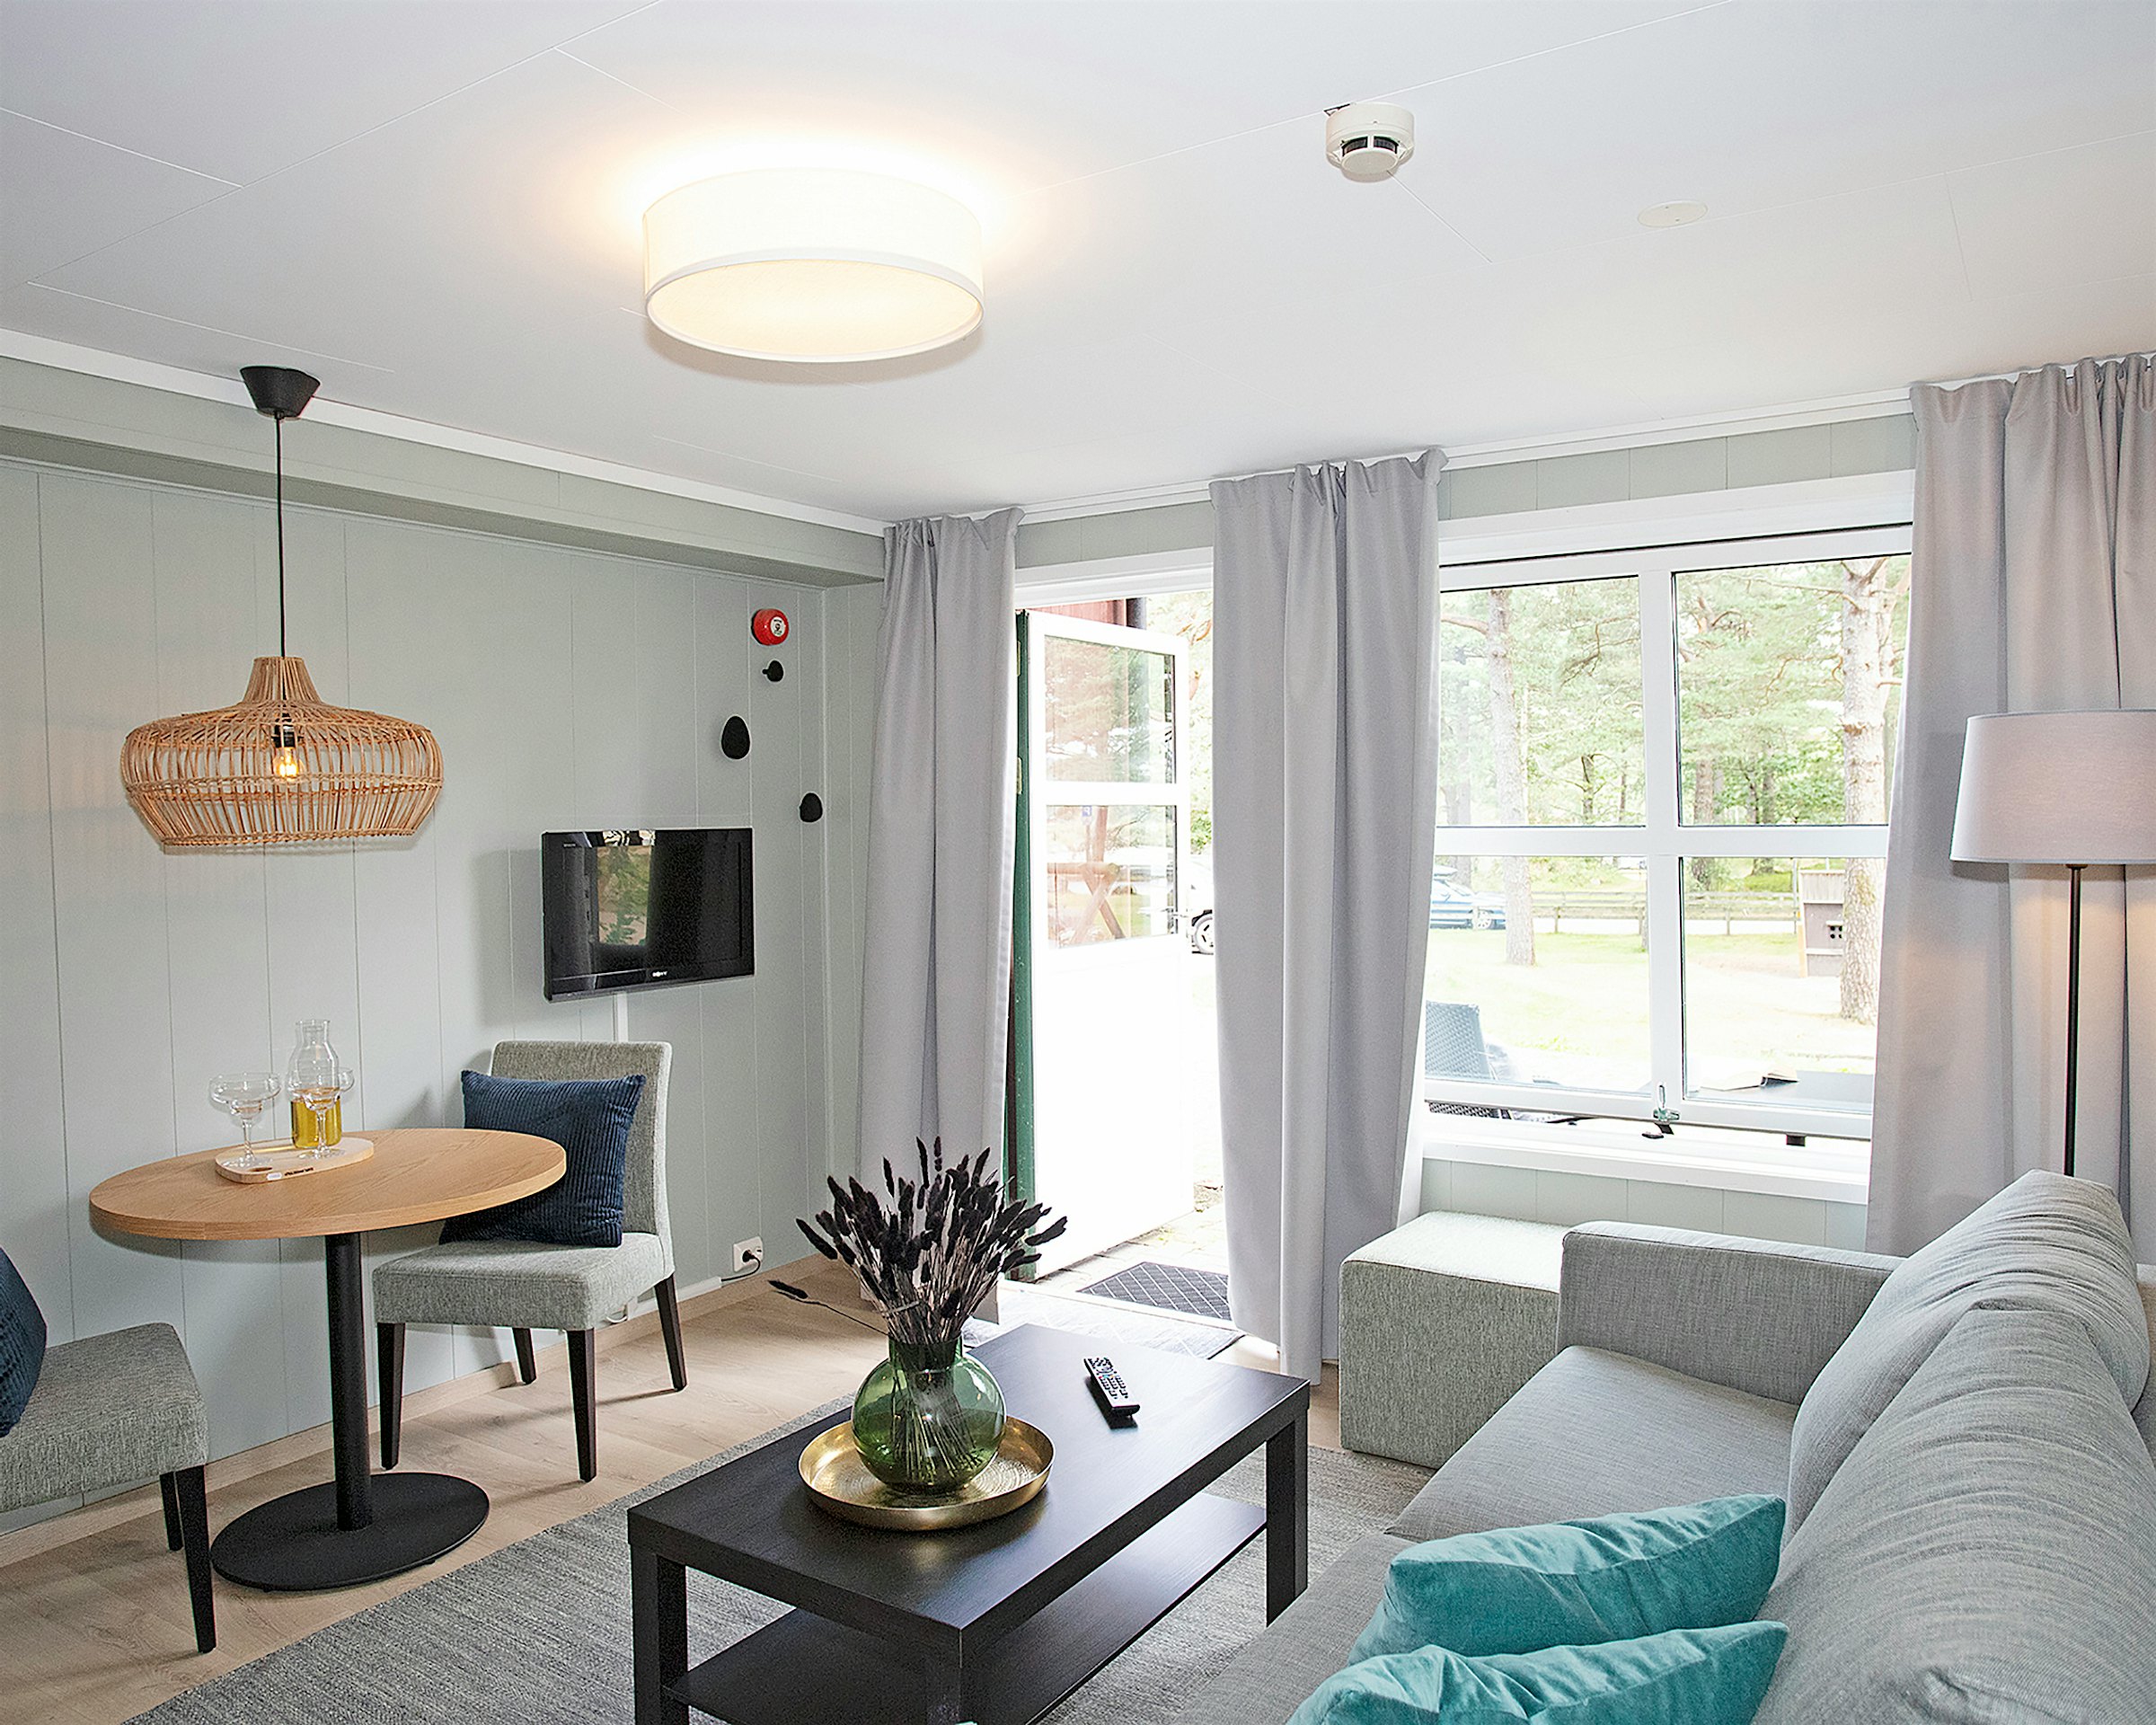 Lys og moderne stue med sofa, spisebord, TV, store vinduer med lange lyse gardinger. Foto